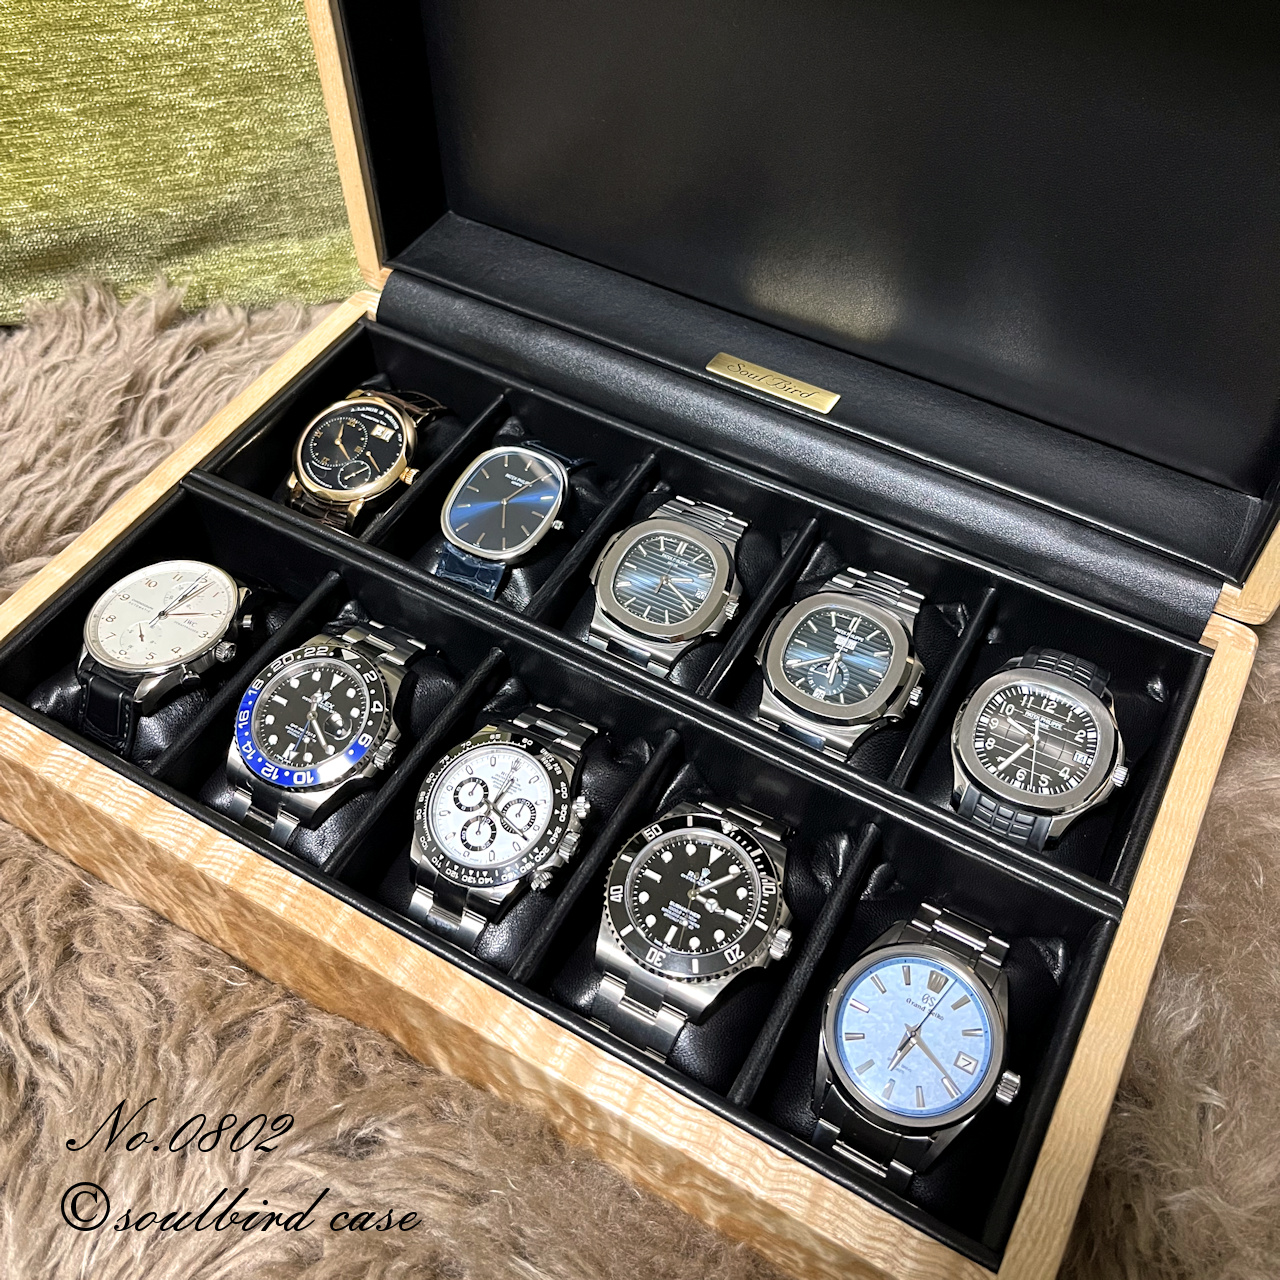 時計ケース 腕時計 収納ケース 7本用 平置き2本 黒合皮 コレクション IG-ZERO53A-1 当店オリジナル 高級時計ケース ギフトラッピング込み